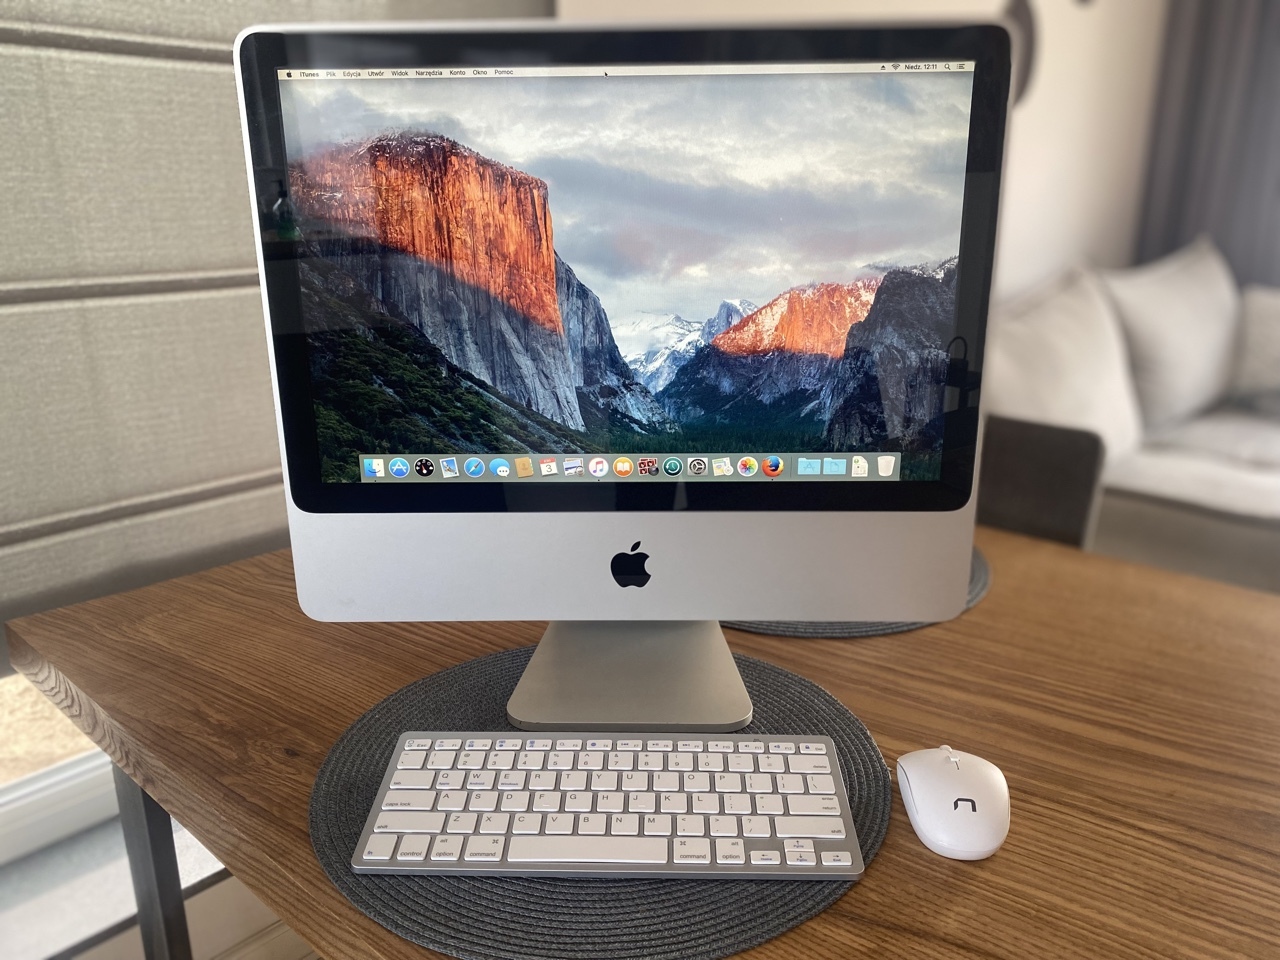 آی مک 20 اینچ استوک Apple iMac A1224